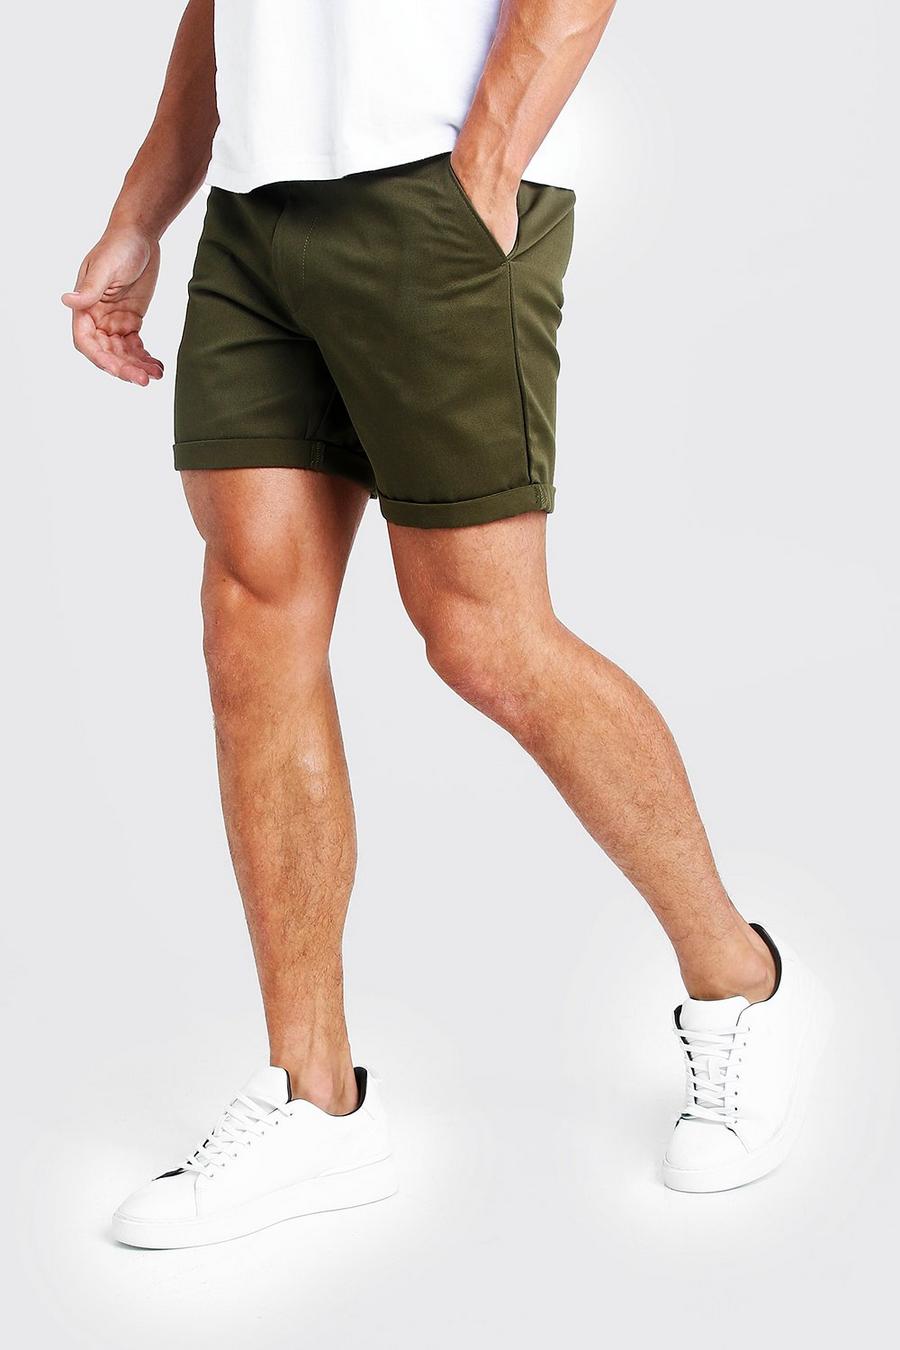 Pantalones cortos chinos de largo medio en color caqui image number 1